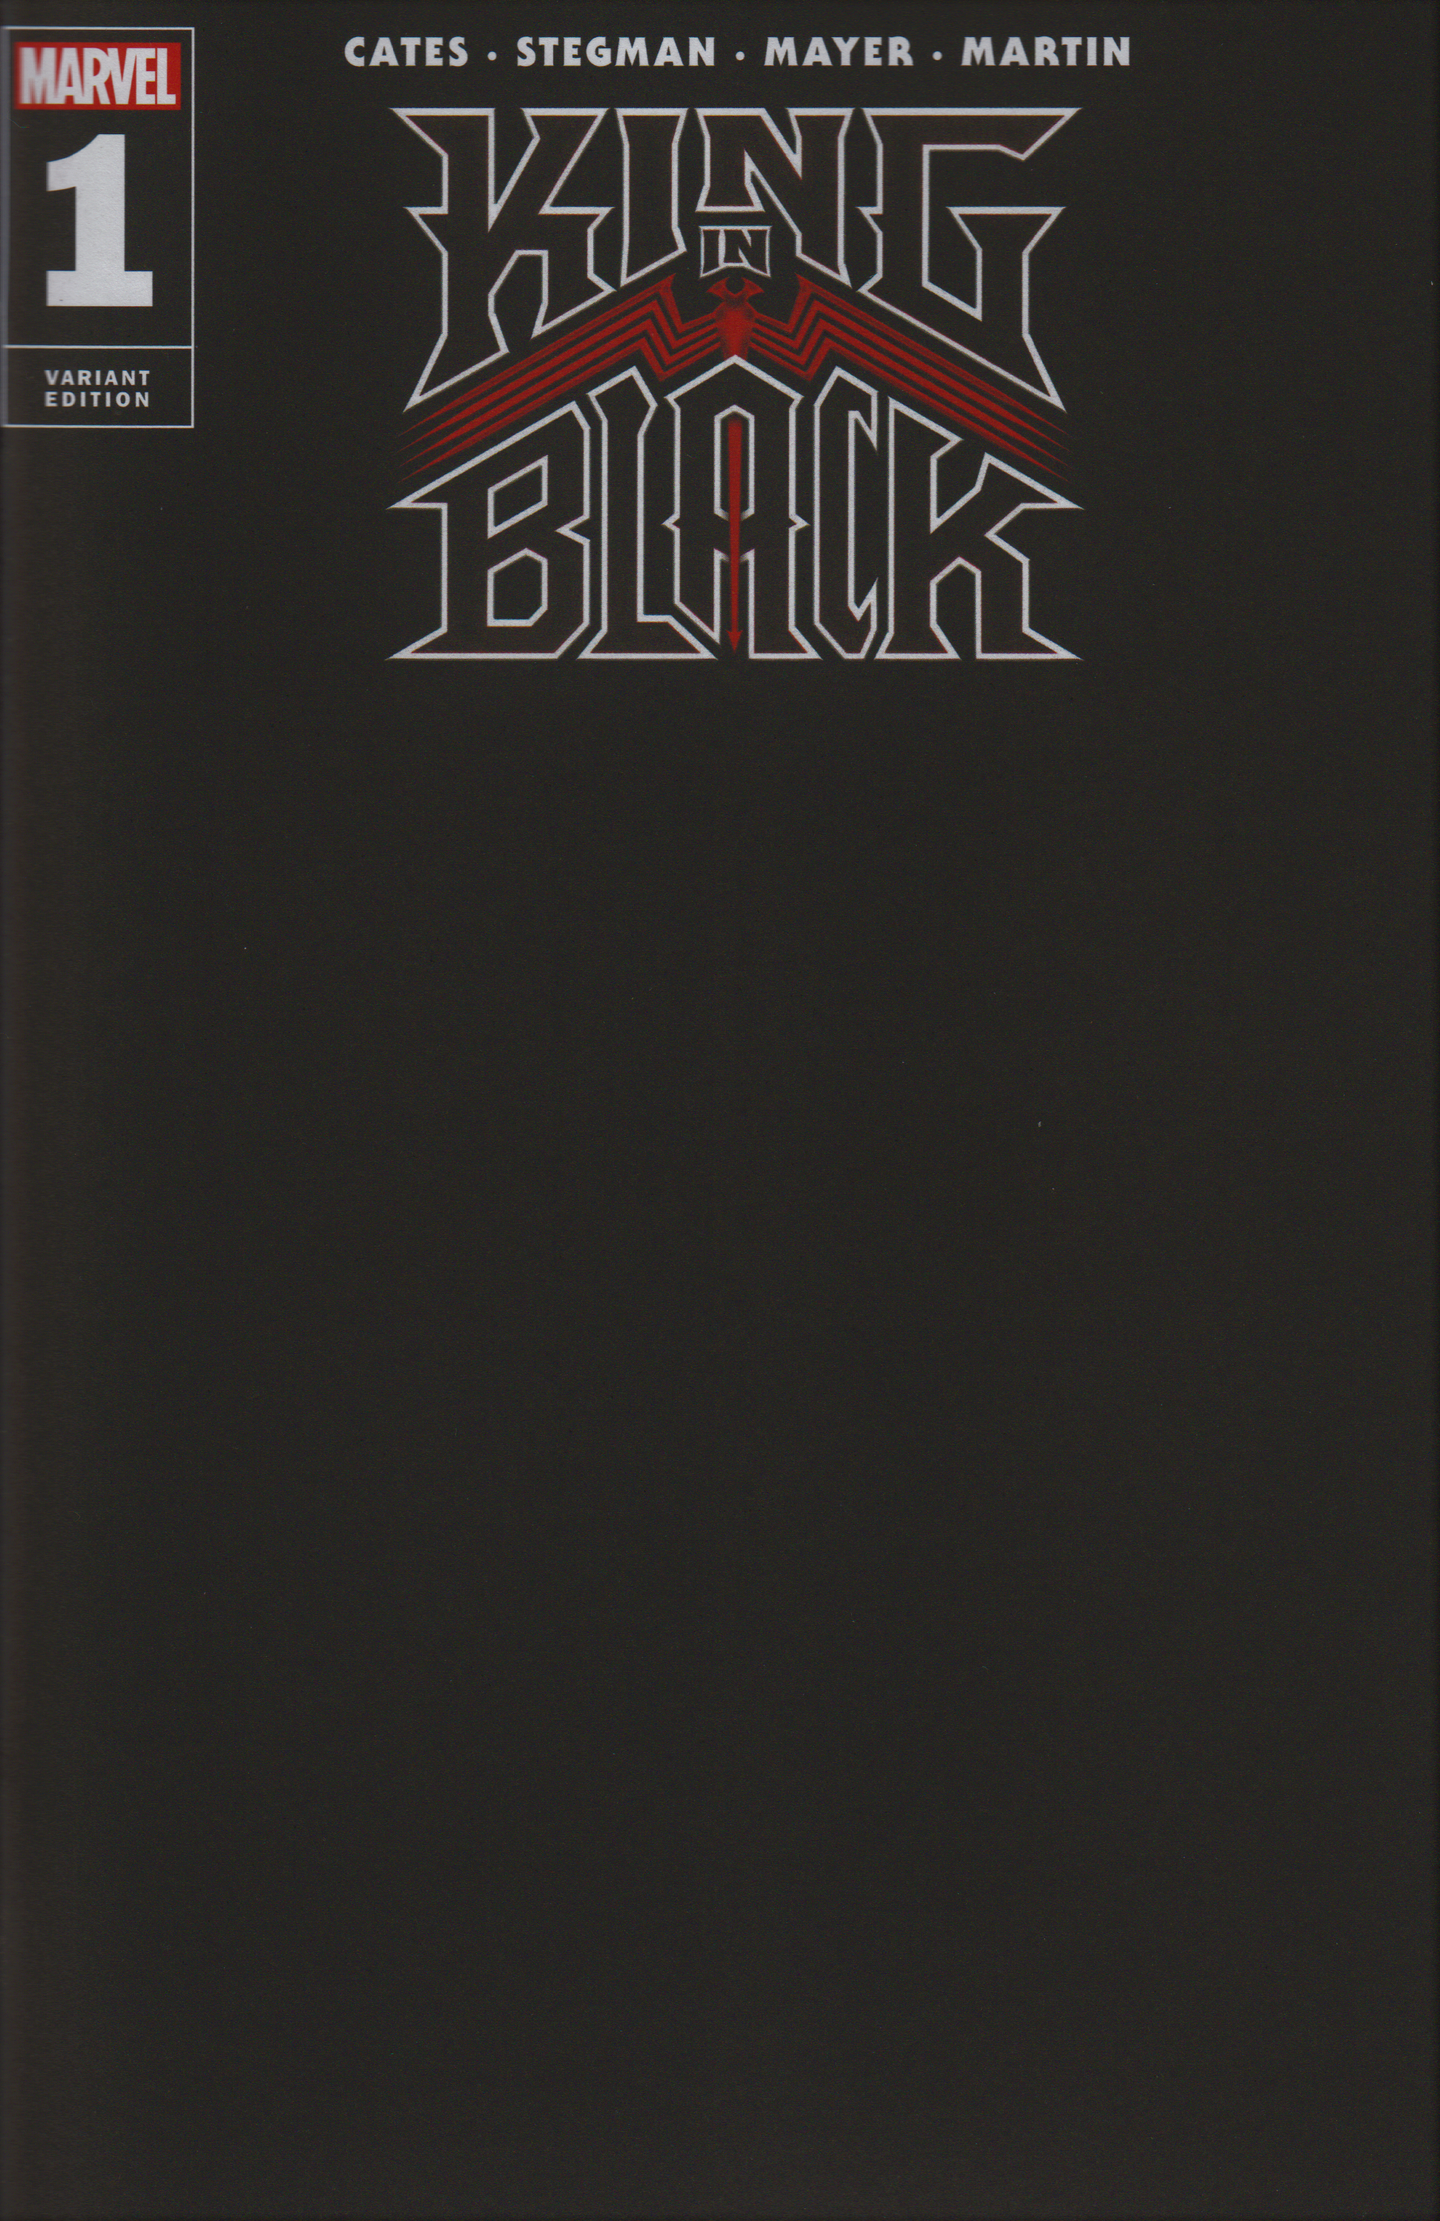 King in Black #1 Black Blank Sketch Cover